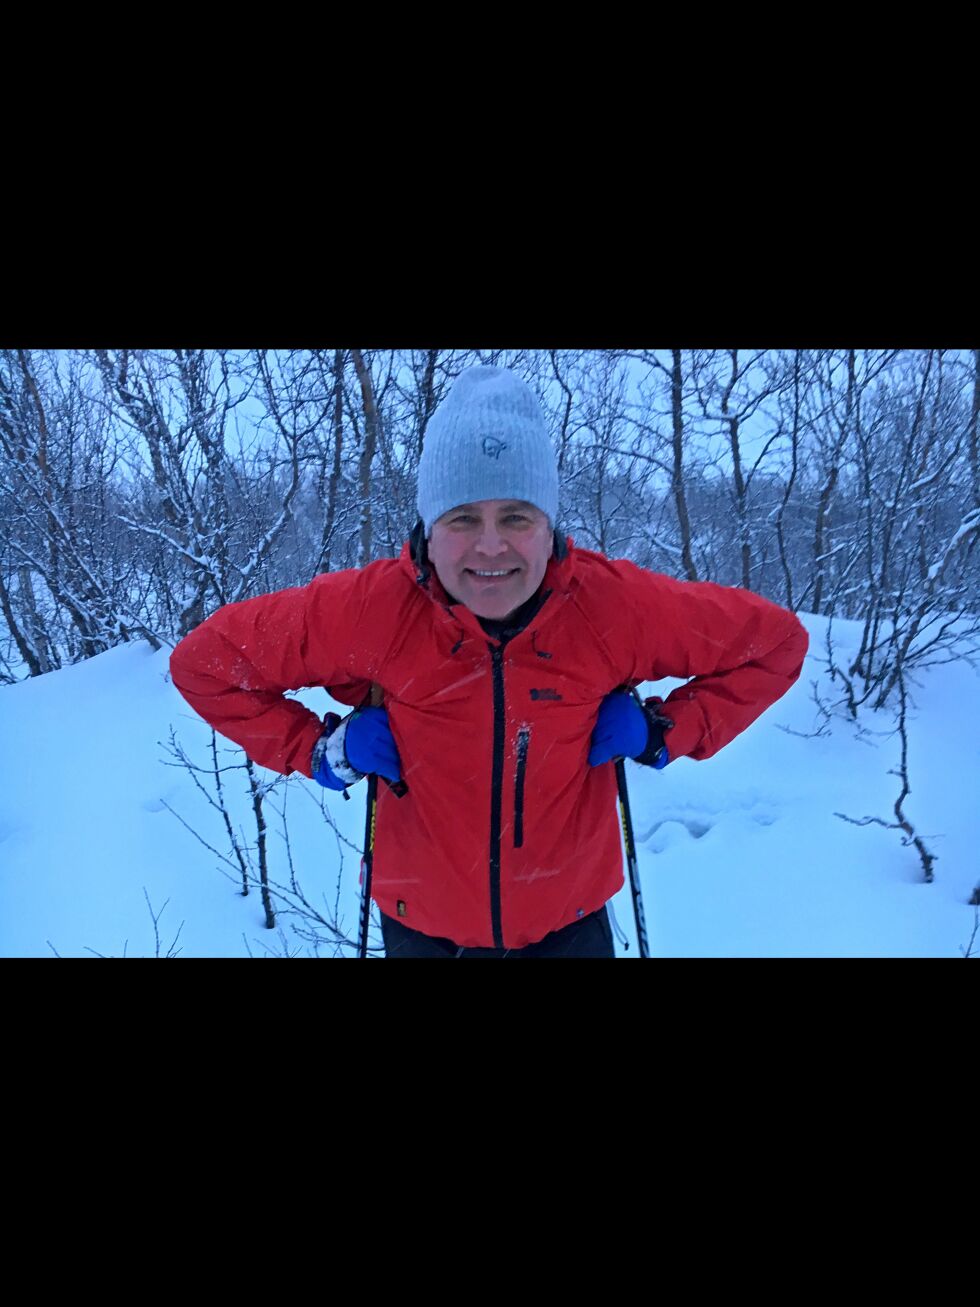 Lars Randal var nylig og testet sneforholdene inn mot Korpfjell, og var fornøyd med at det var nok sne til å gå på ski.
 Foto: Linda Beate Randal